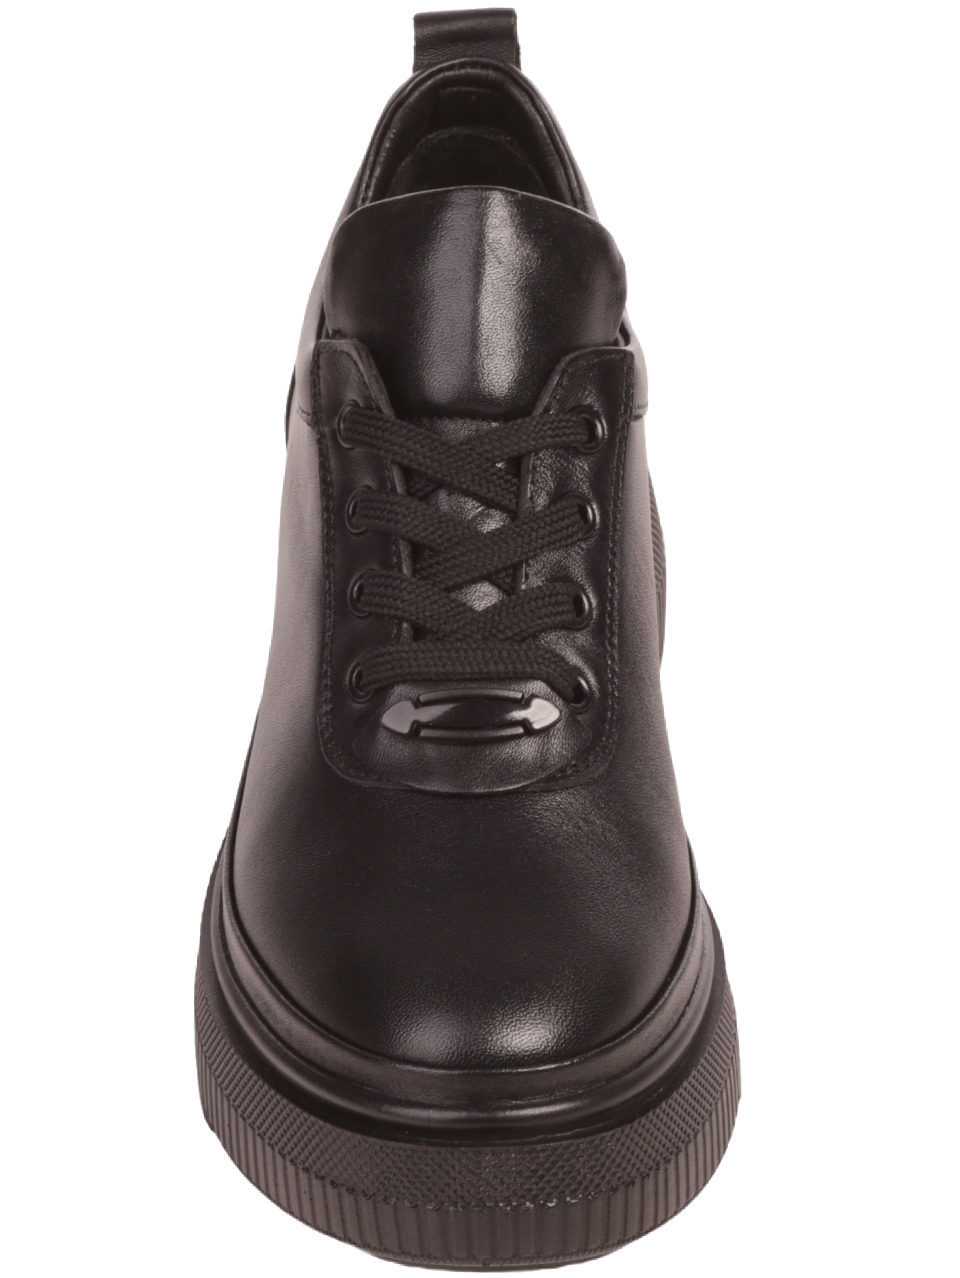 Дамски обувки от естествена кожа в черно 3AT-23723 black